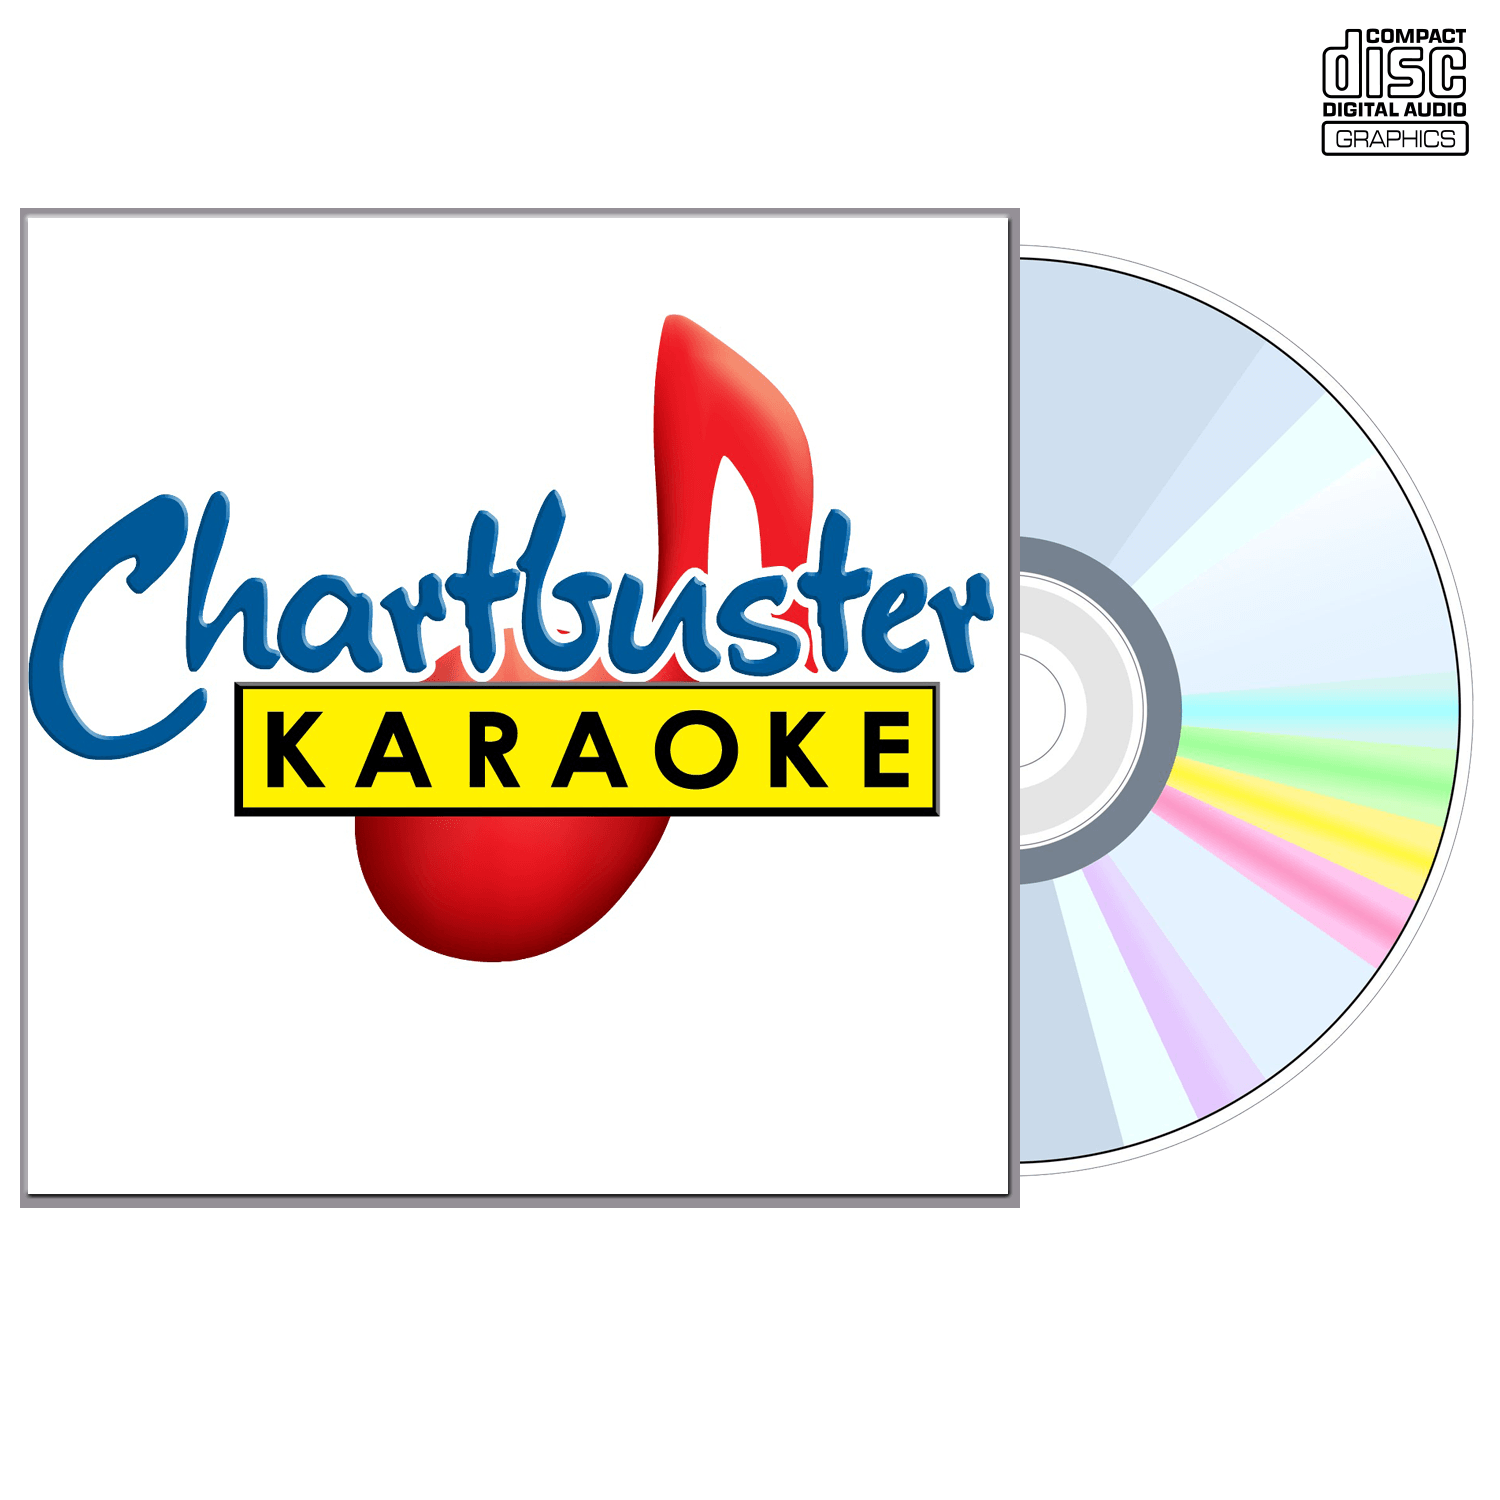 Katrina Elam - CD+G - Chartbuster Karaoke - Karaoke Home Entertainment